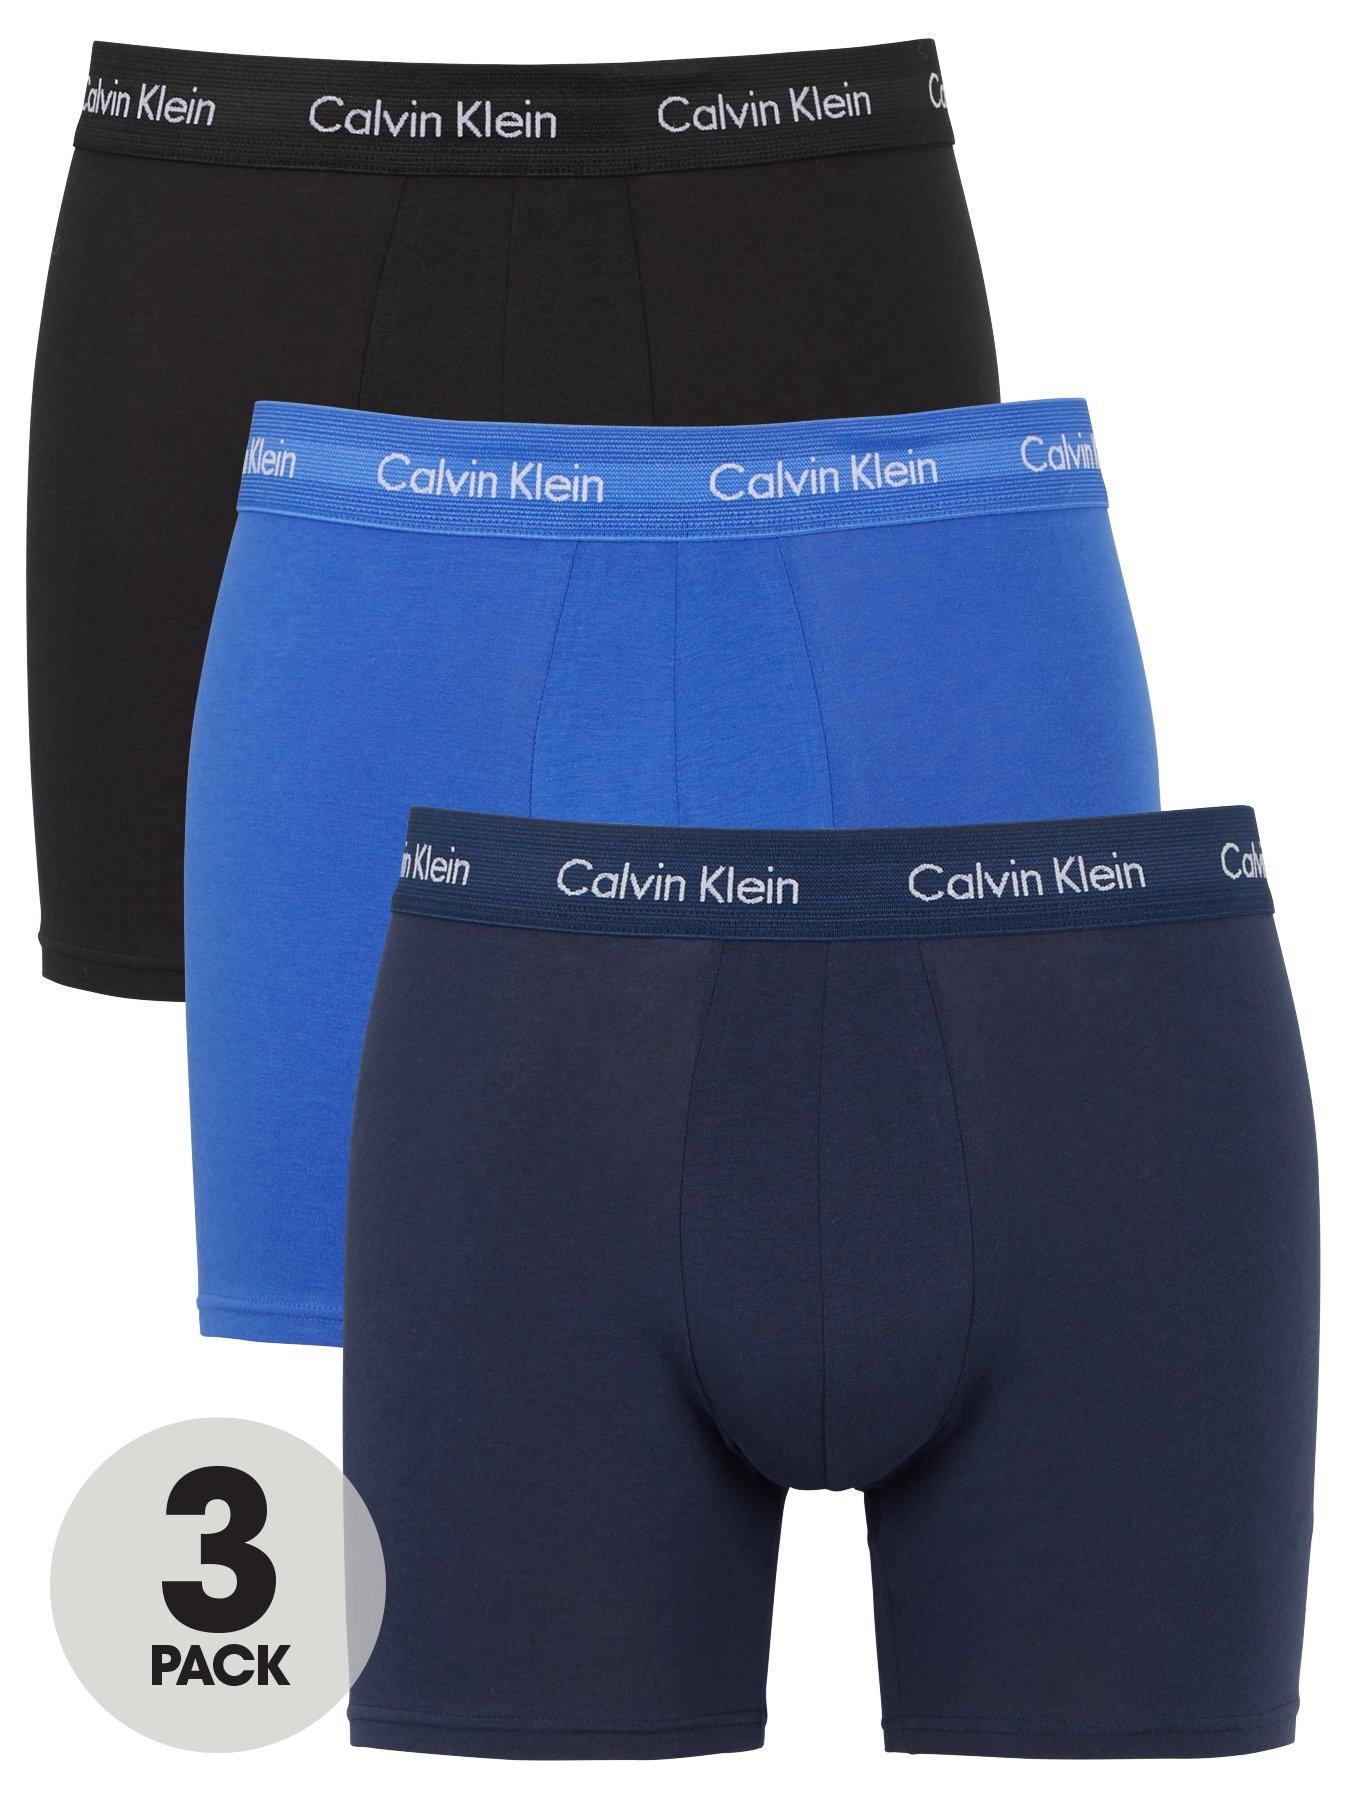 Calvin Klein Men's Cotton Classic Fit 3 Pack Boxer Briefs